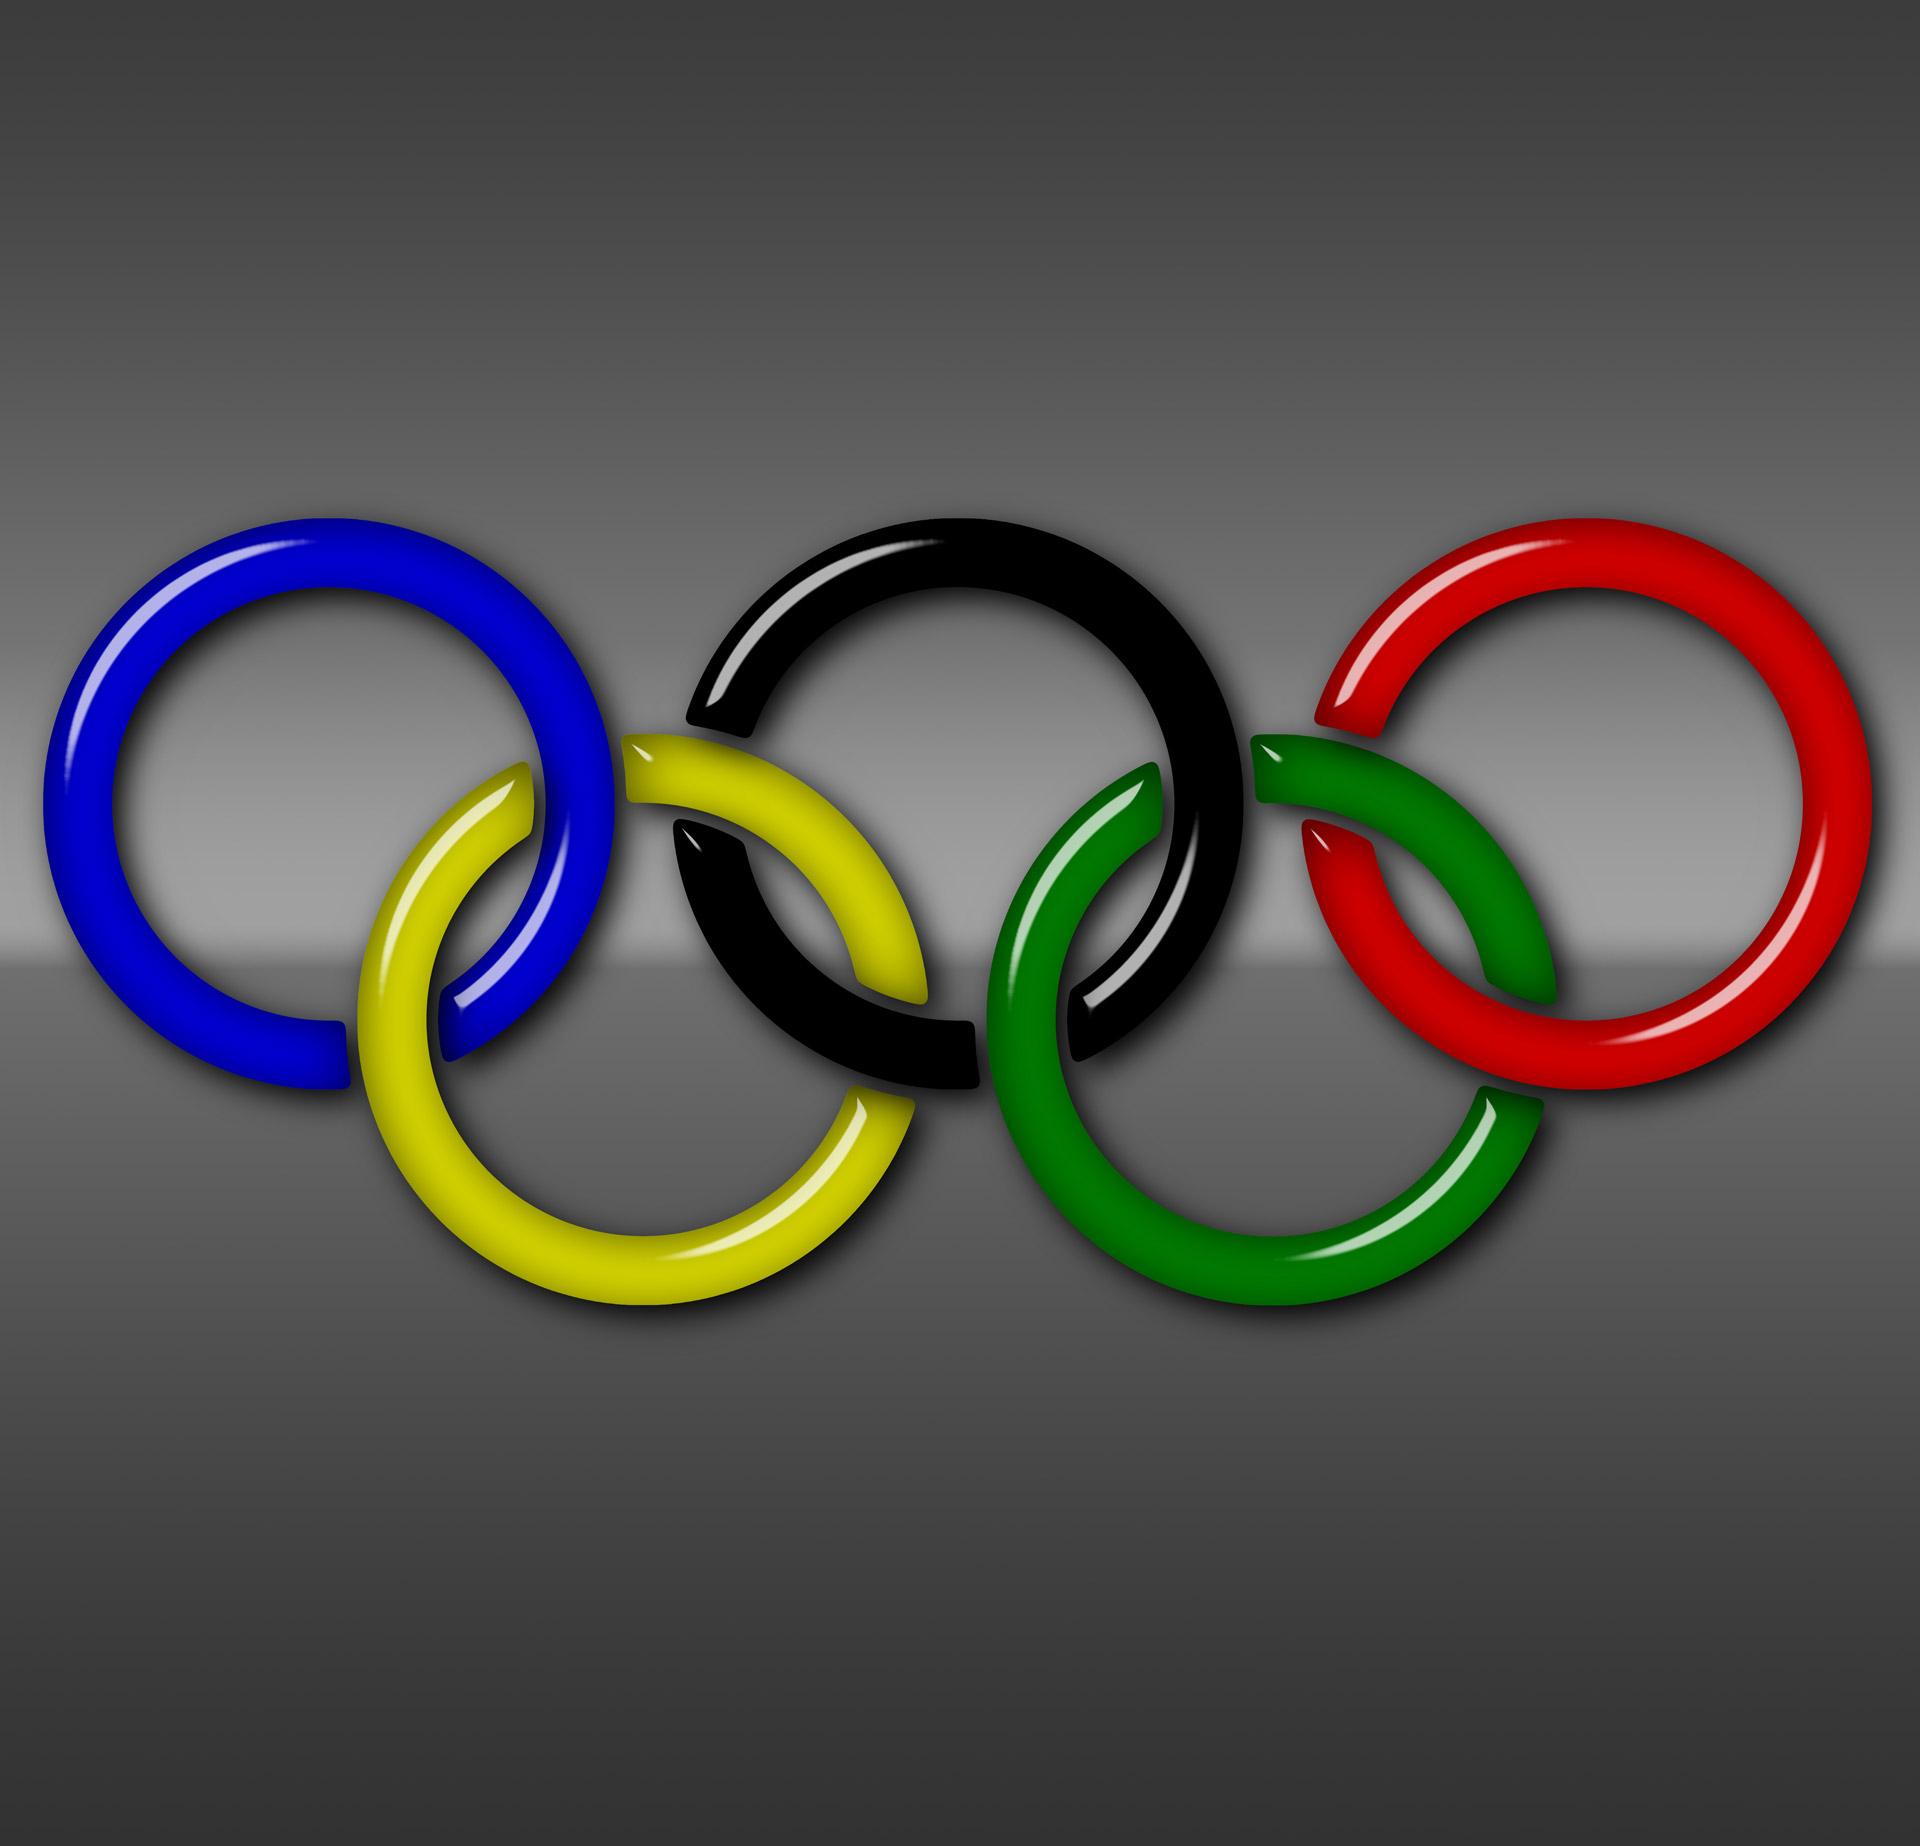 Ои 6. Кольца Олимпийских игр. Олимпийские кольца на Олимпиаде. Кольца Олимп игр. Символ Олимпийских игр кольца.